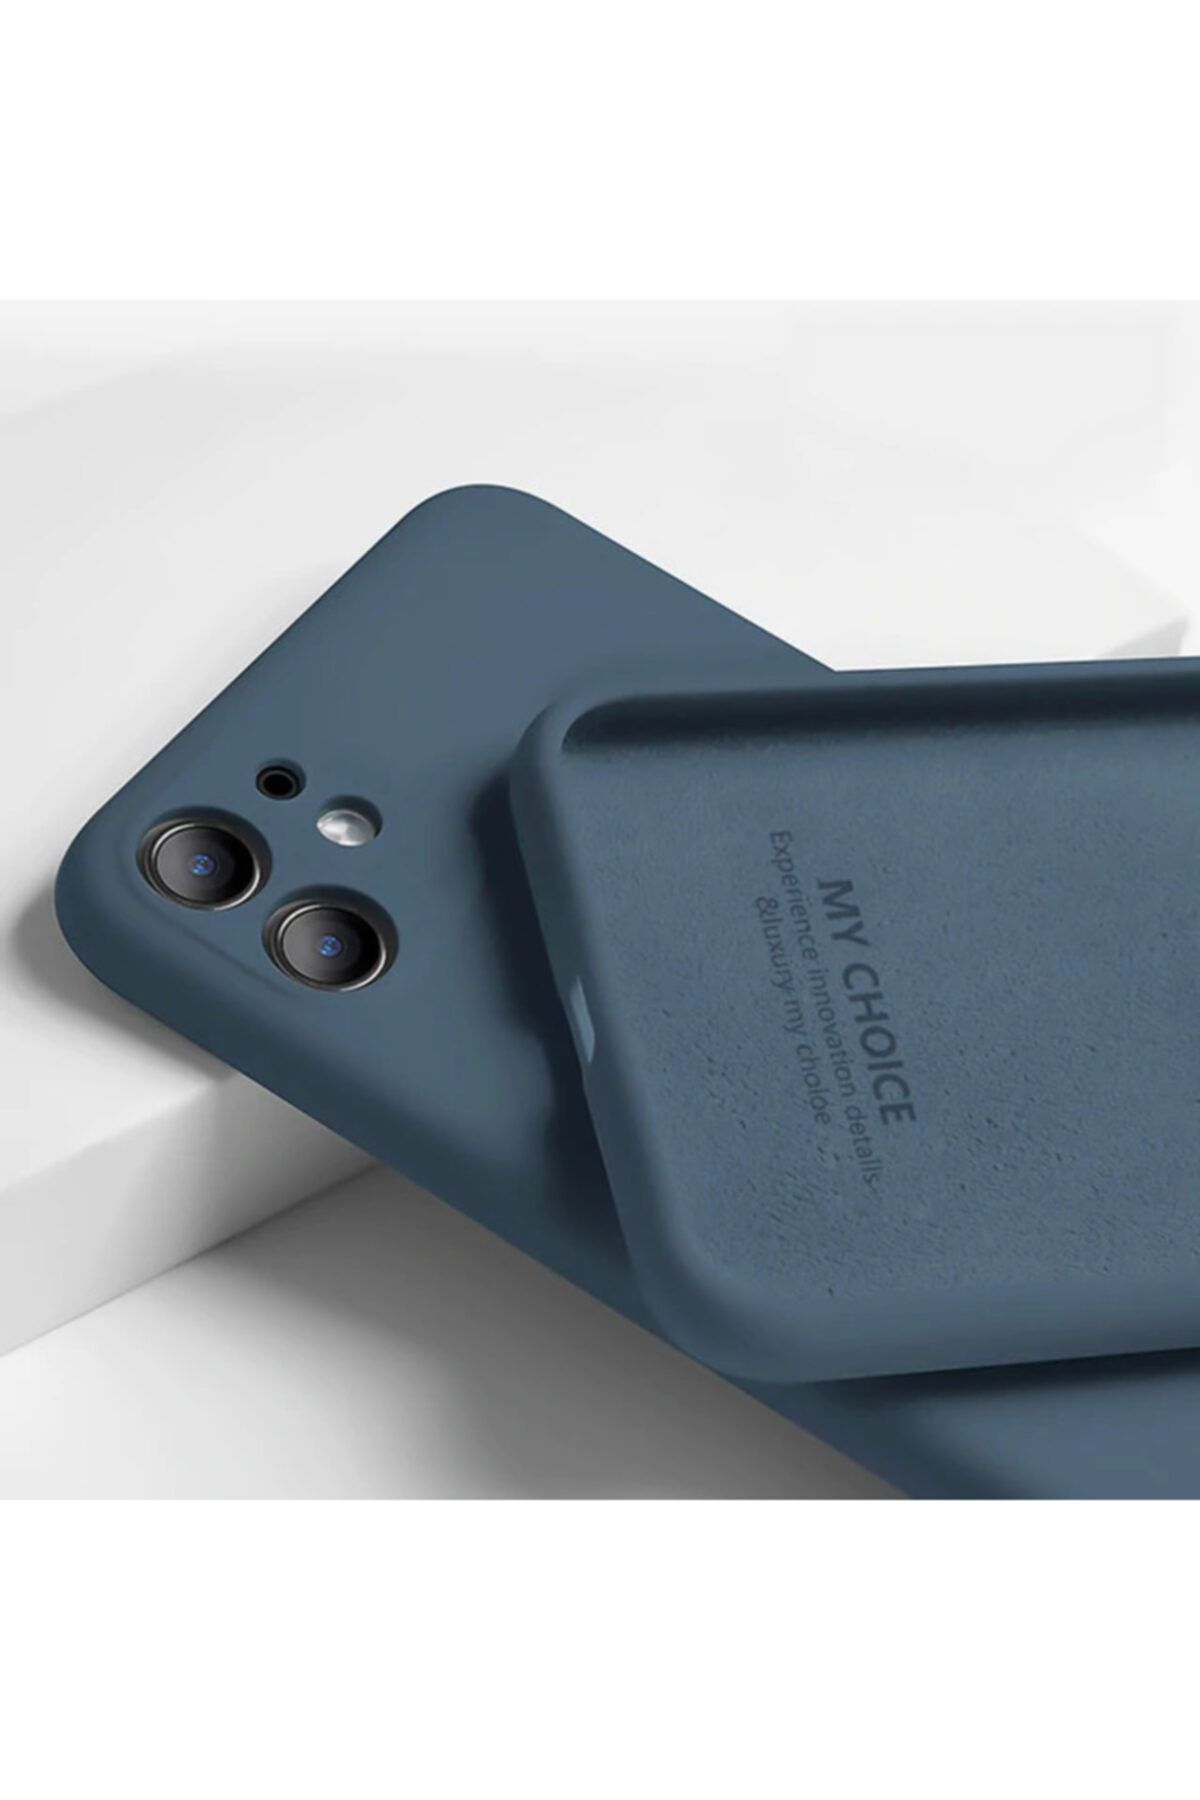 Fibaks Apple Iphone 11 Uyumlu Kılıf 3d Kamera Korumalı Içi Kadife Logosuz Lansman Kapak